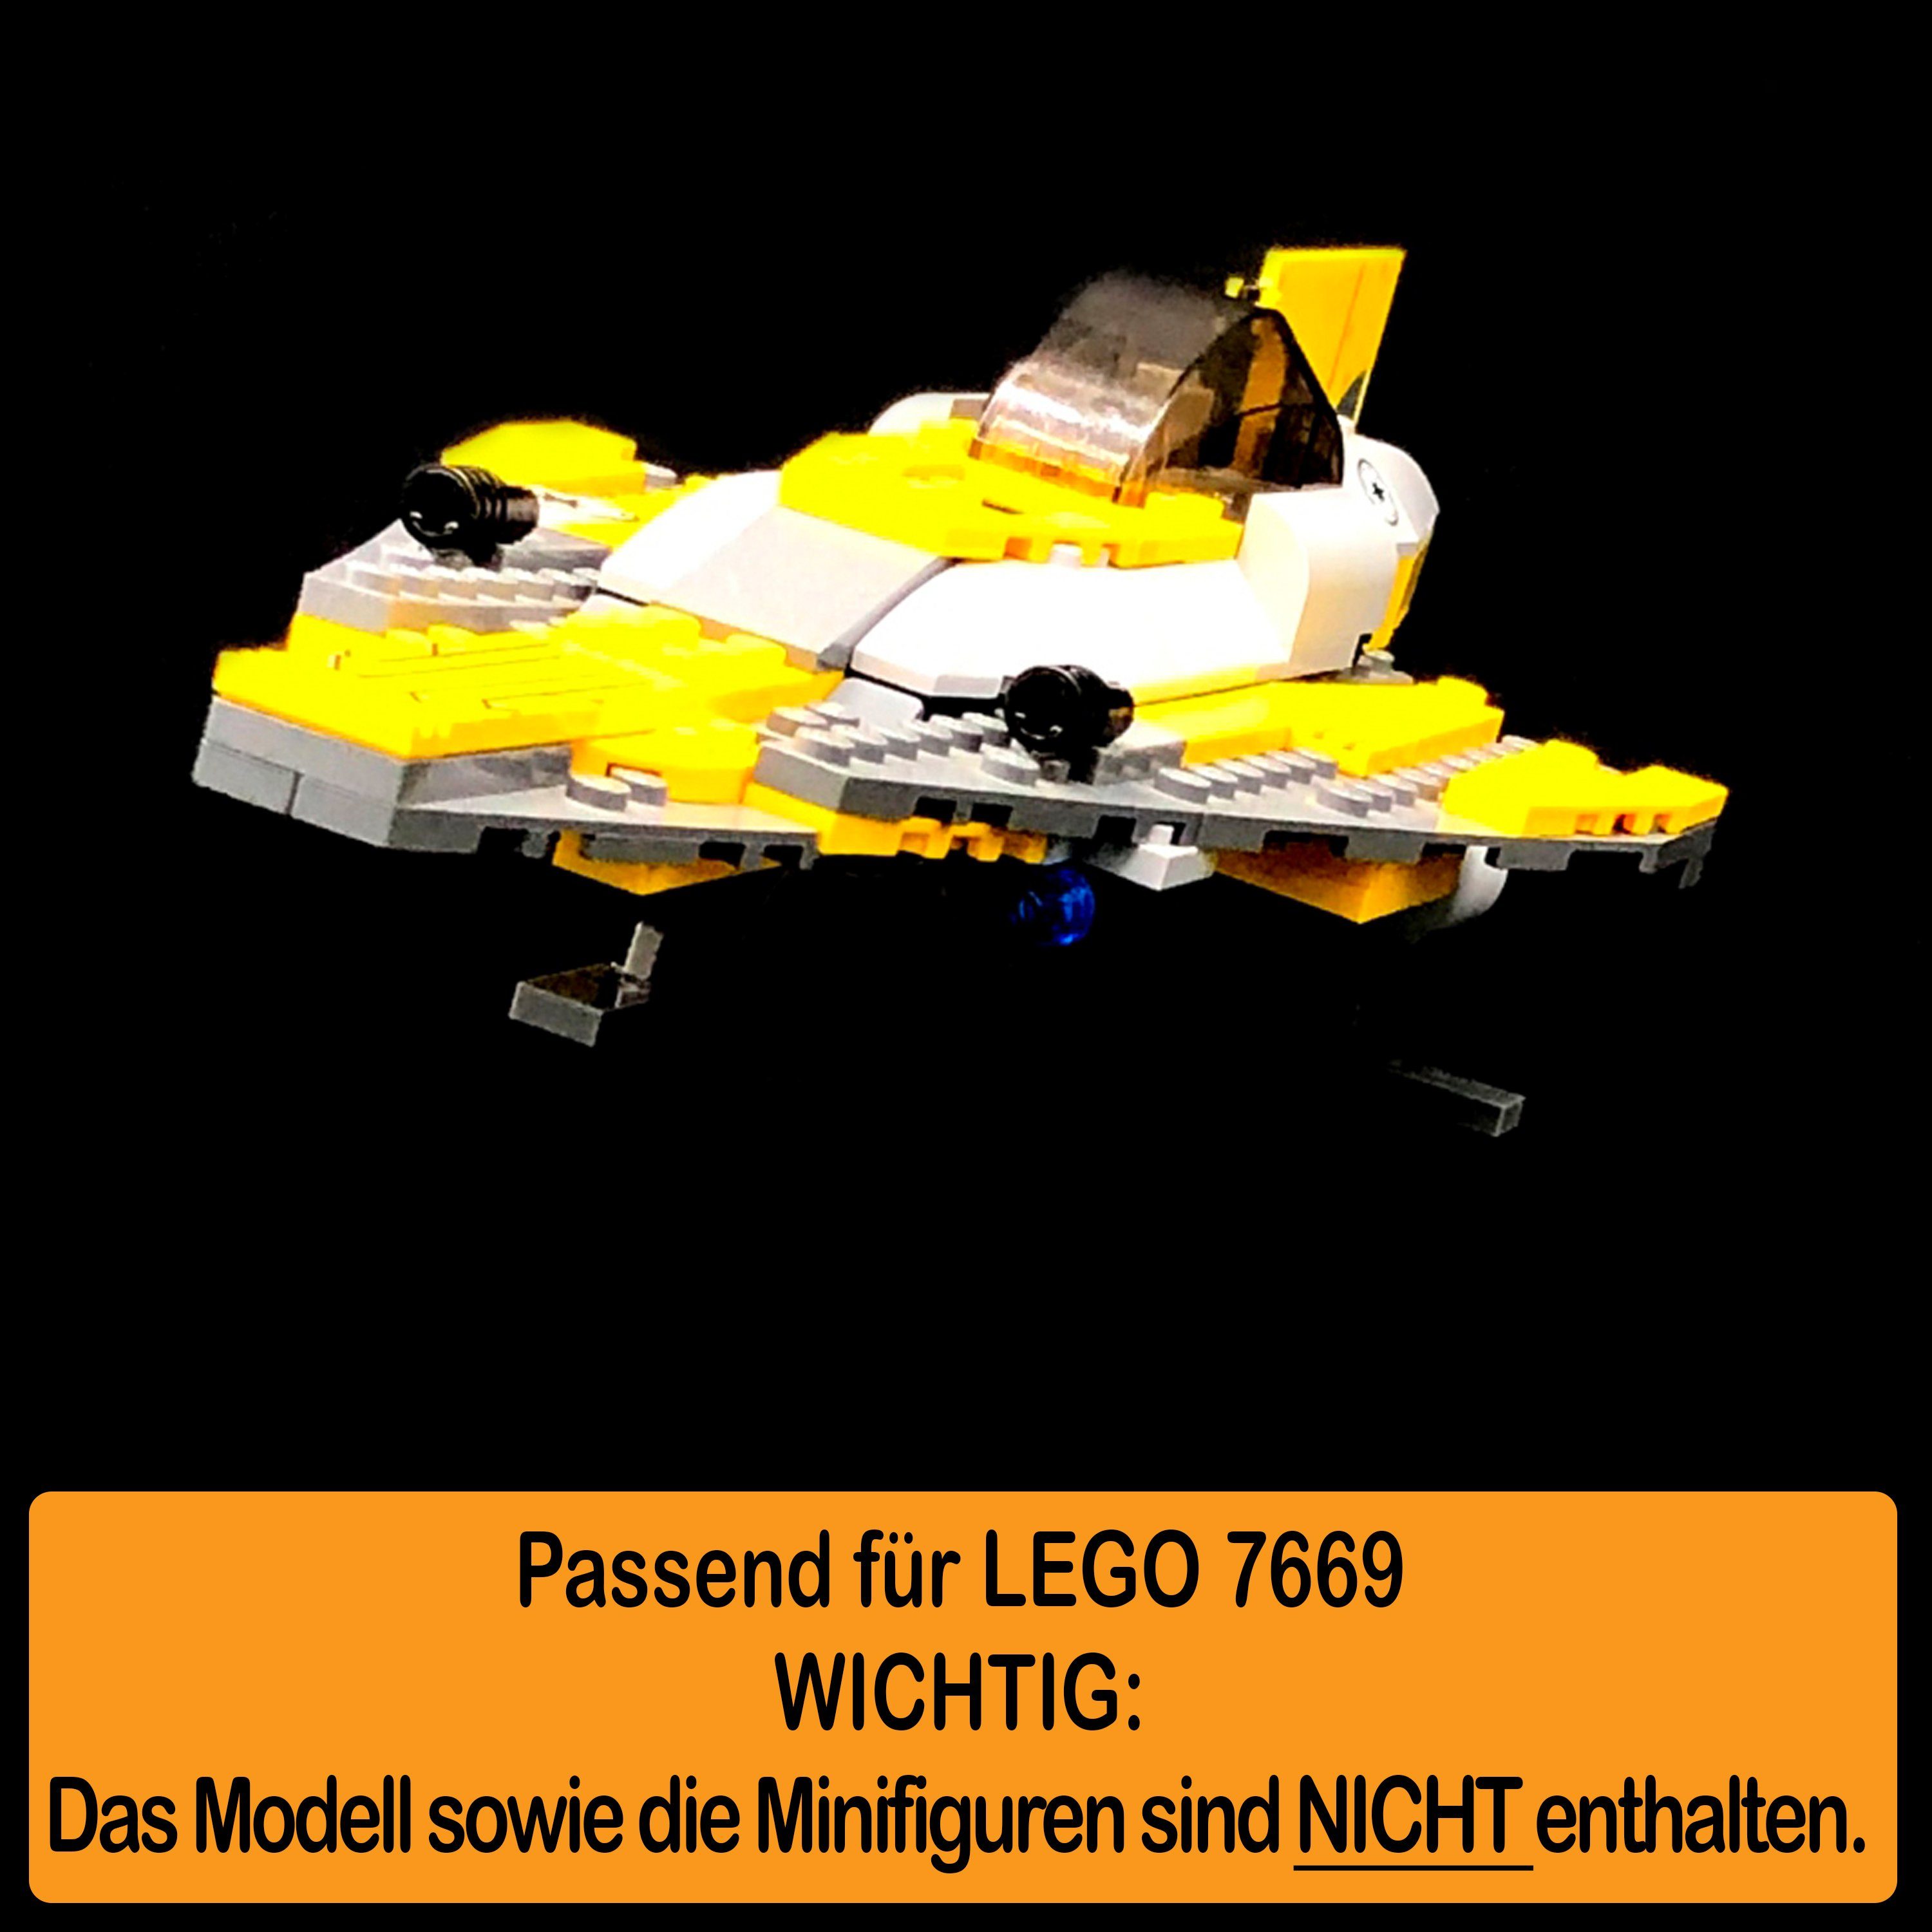 AREA17 Standfuß Acryl Display Stand 7669 Starfighter und zusammenbauen), für (verschiedene selbst in 100% Jedi einstellbar, zum Anakin´s Made Germany Winkel Positionen LEGO